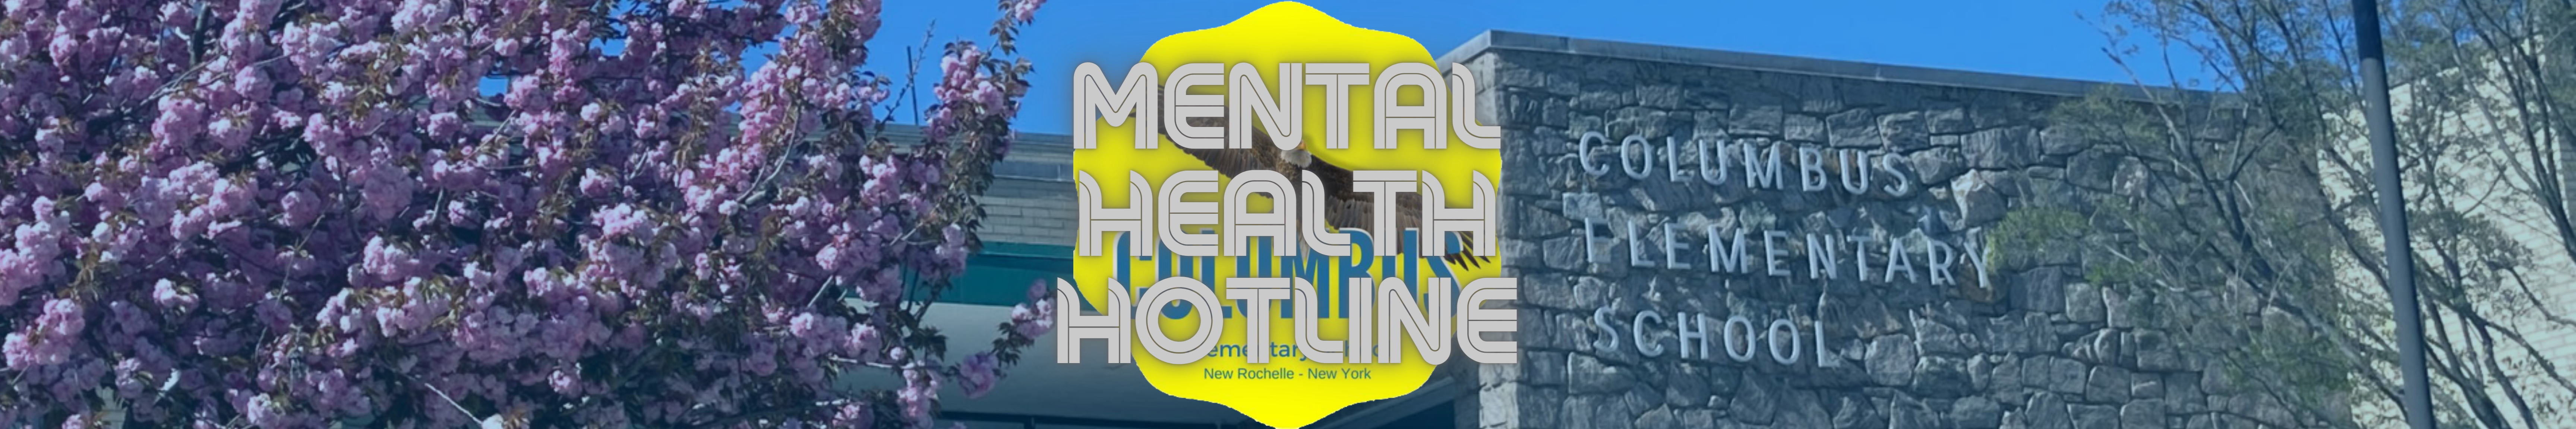 Mental Health Hotline banner